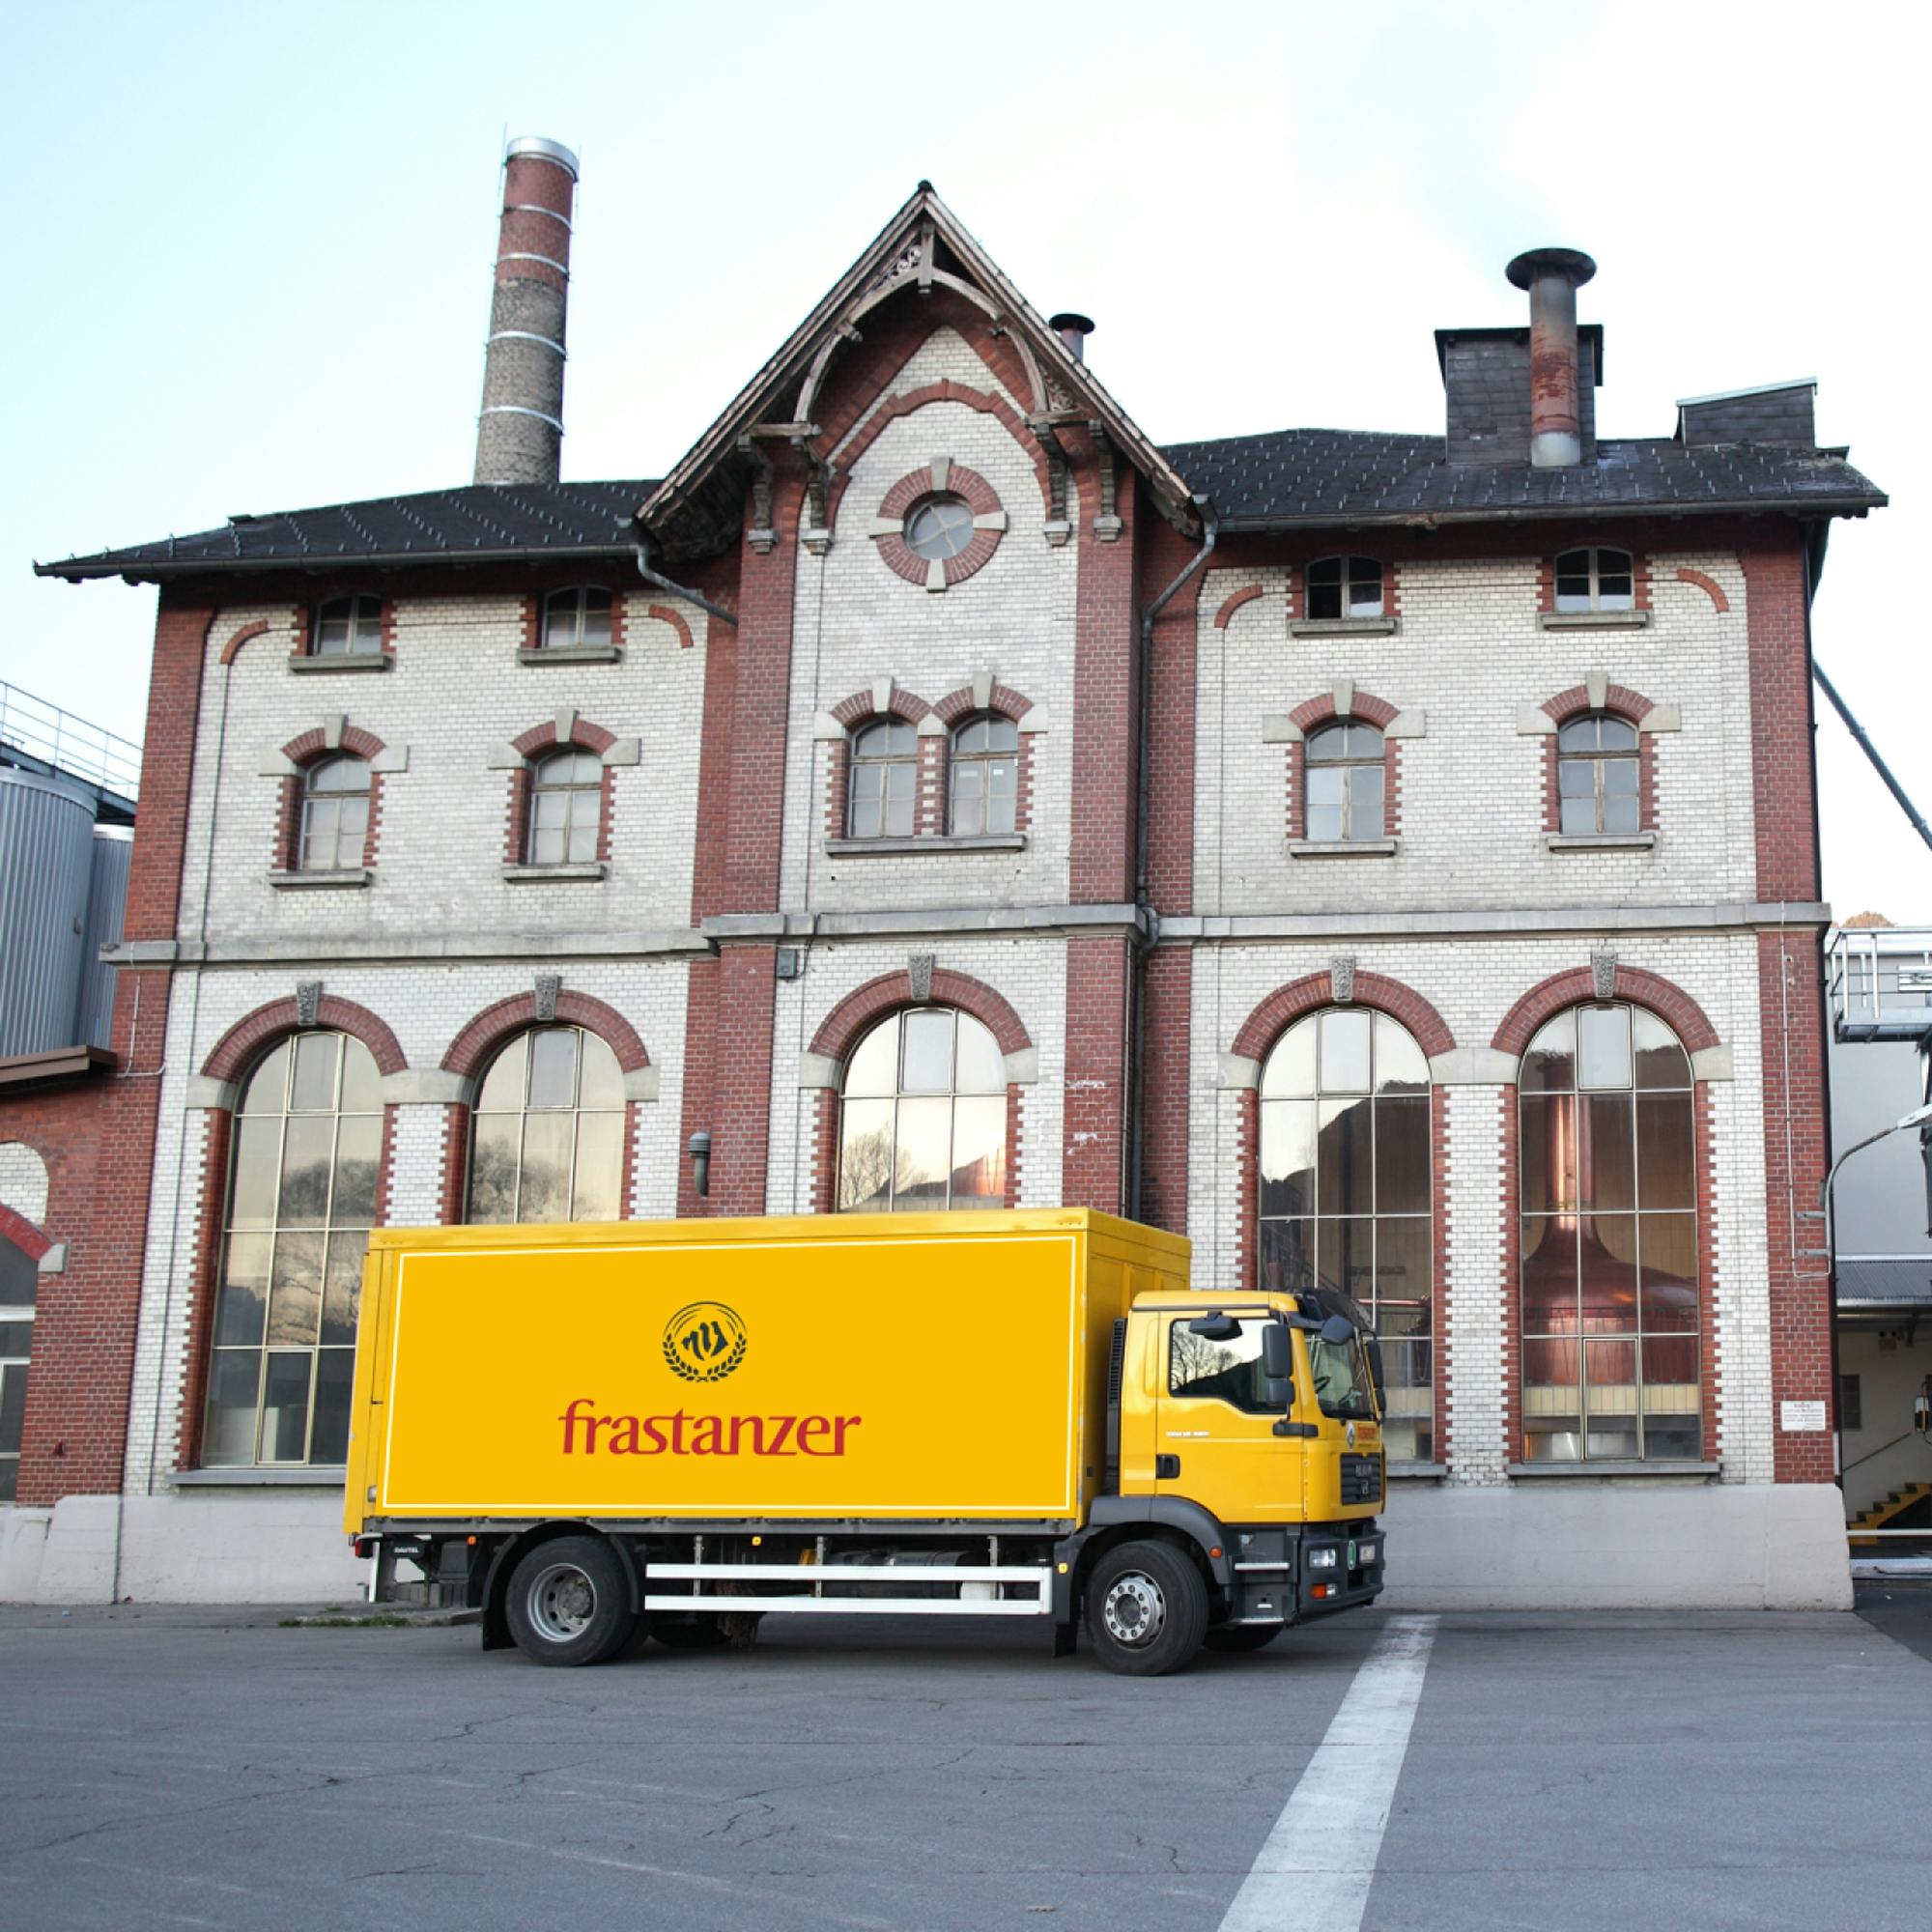 Die Brauerei heute mit einem gelben Frastanzer LKW davor. © gobiq